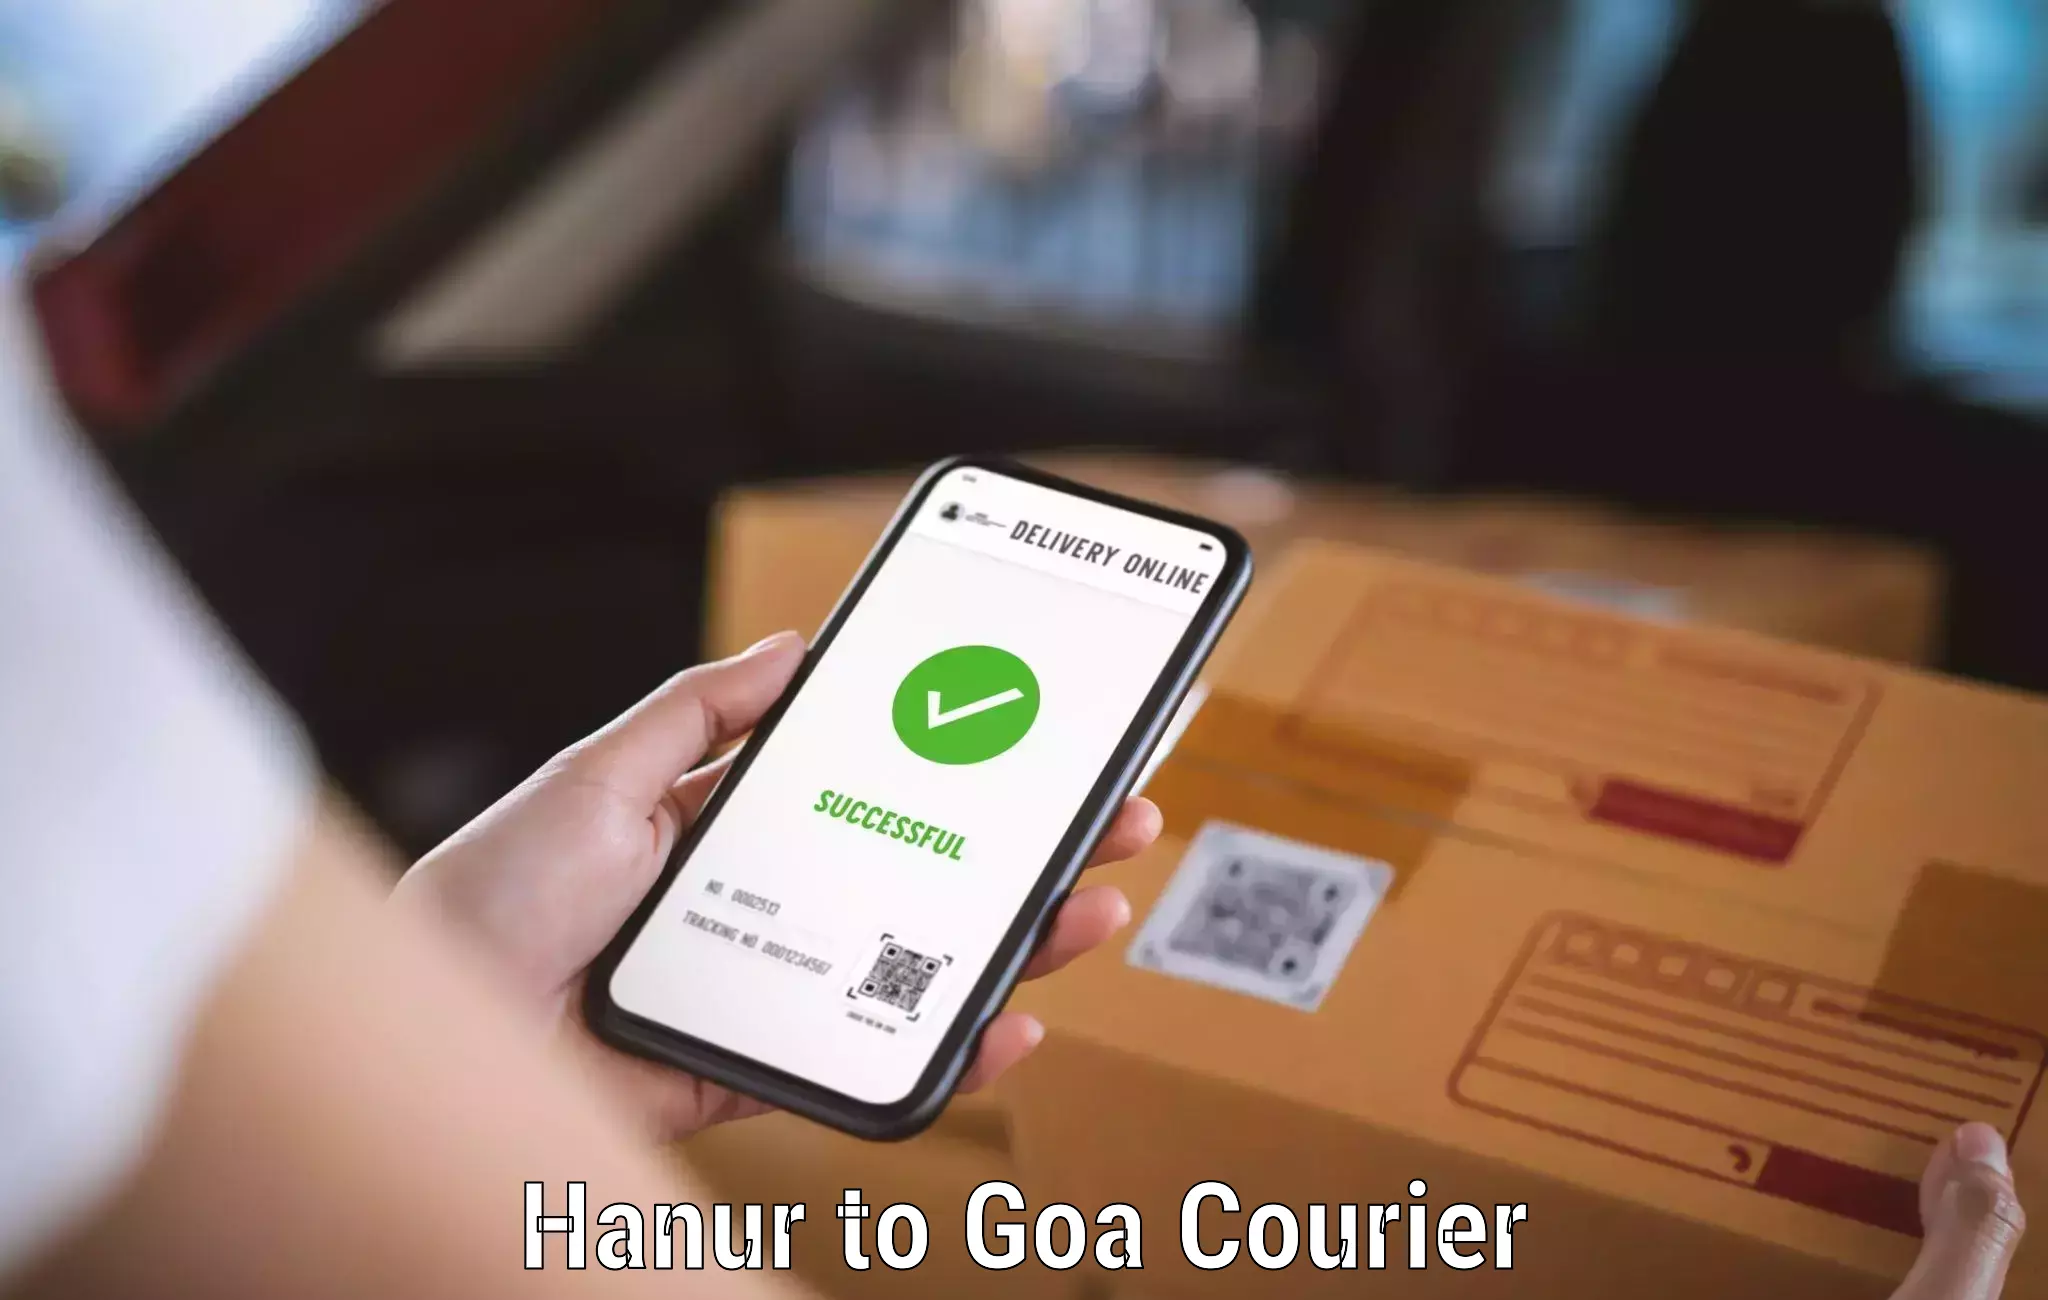 Courier service booking Hanur to Mormugao Port